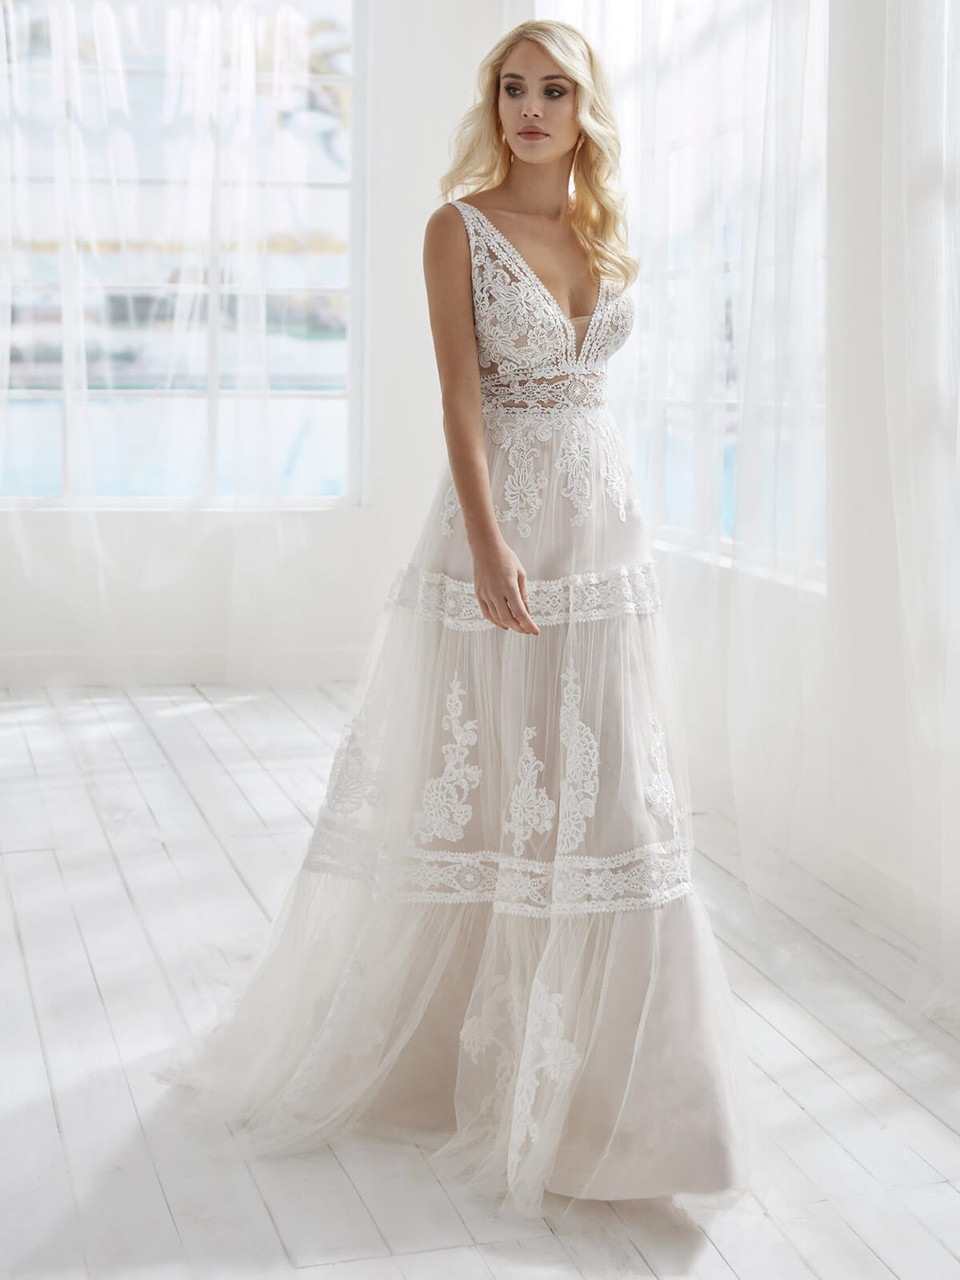 Long-sleeve wedding dress idea - lace, ball gown wedding dress with  v-neckline. Style DP362 … | Wedding dress long sleeve, Bridal ball gown,  Demetrios wedding dress